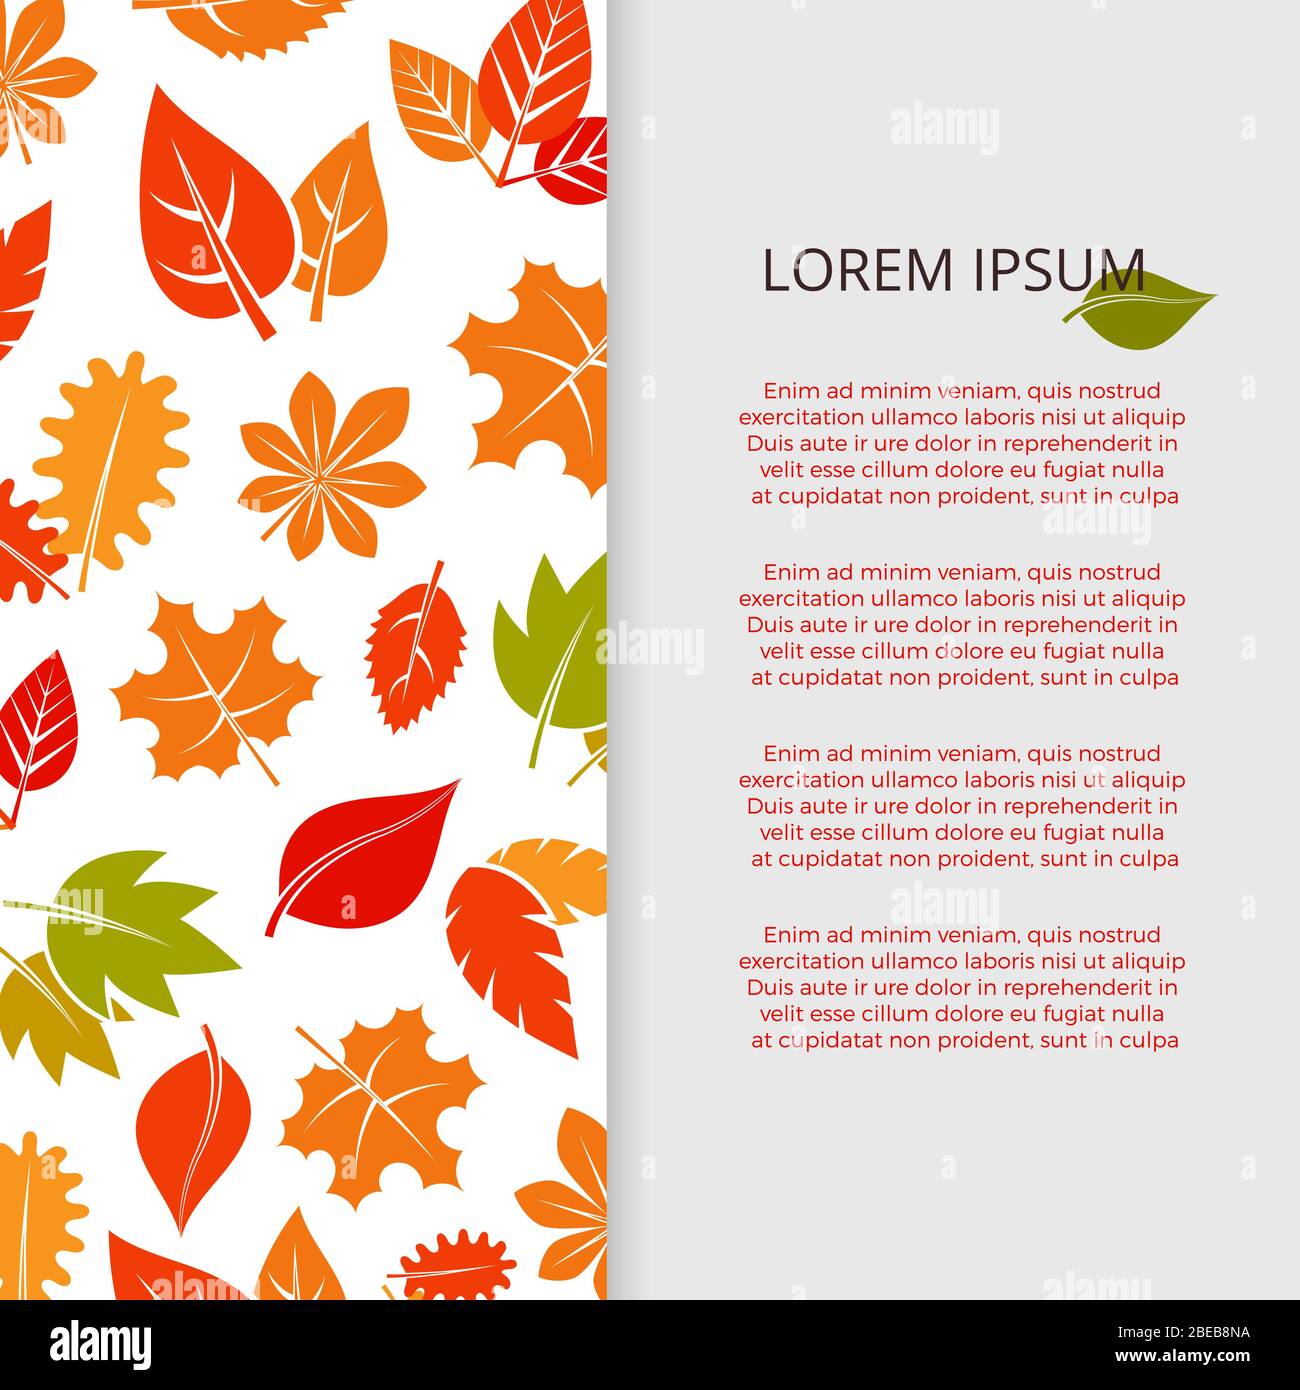 Imprimé feuilles d'automne - affiche de feuillage colorée. Automne de feuilles vectorielles, illustration de la carte de saison de feuillage orange Illustration de Vecteur